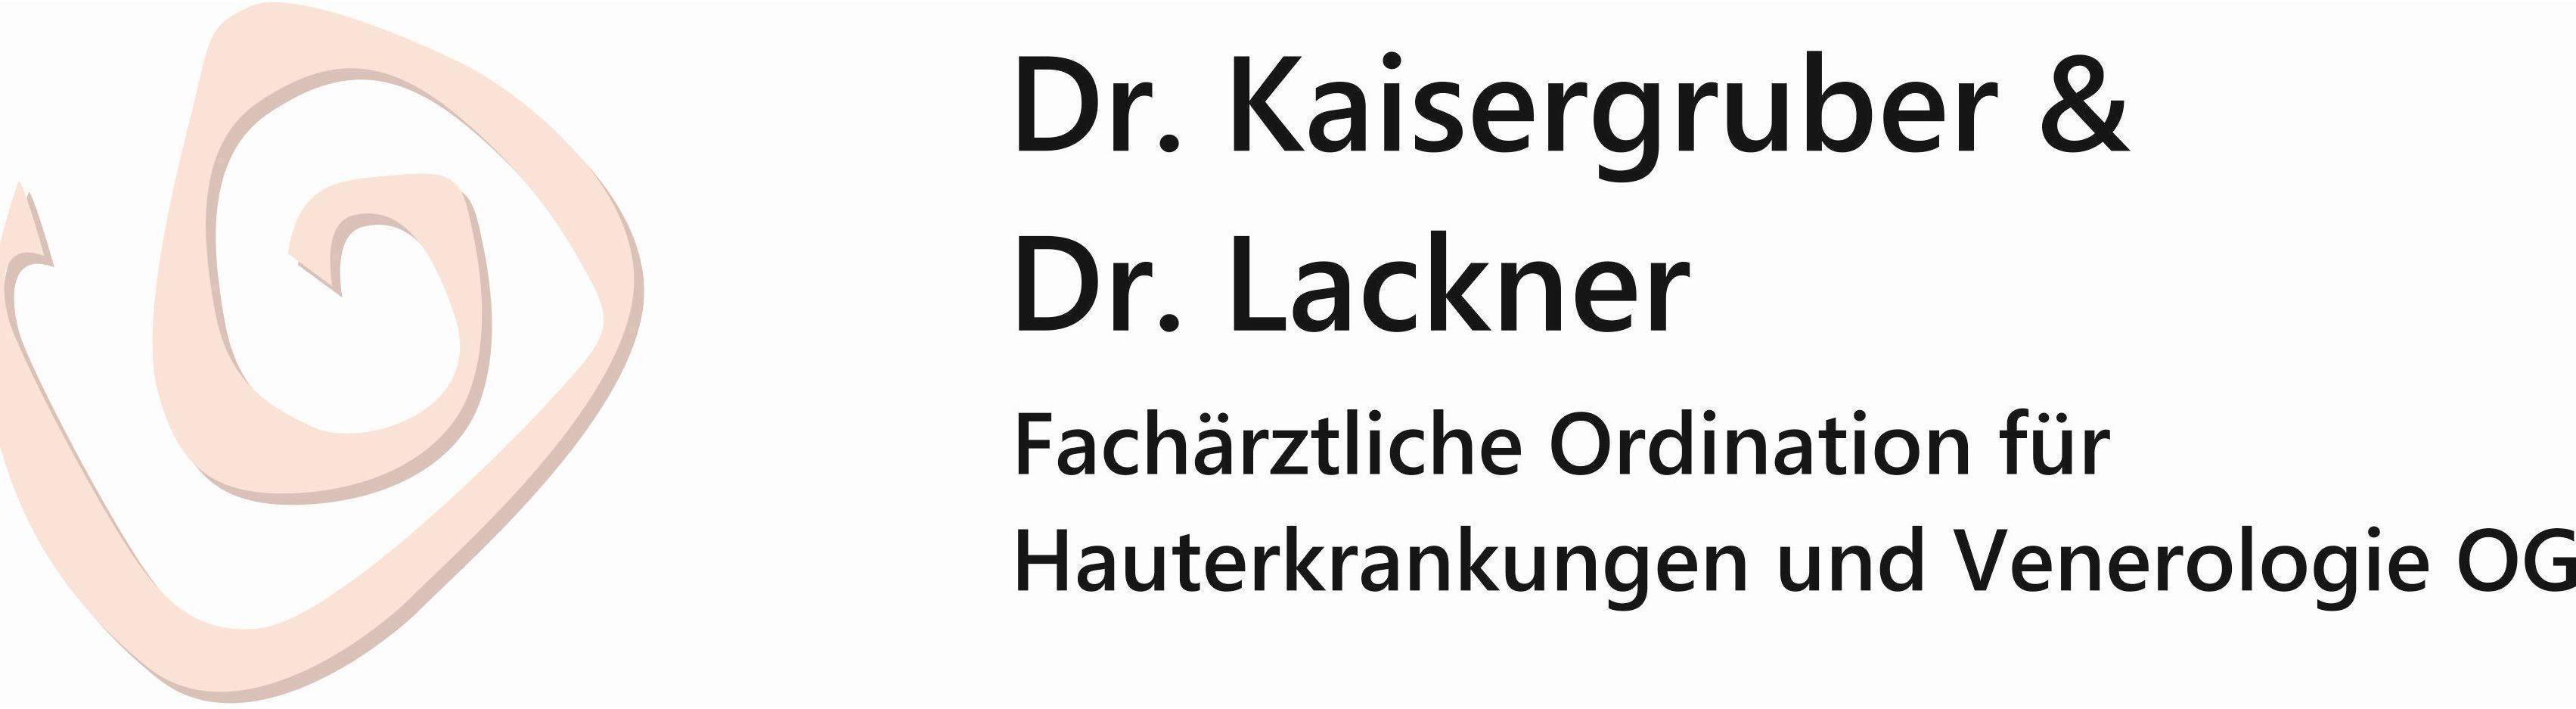 Logo Dr. Kaisergruber & Dr. Lackner - Fachärztliche Ordination für Hauterkrankungen und Venerologie